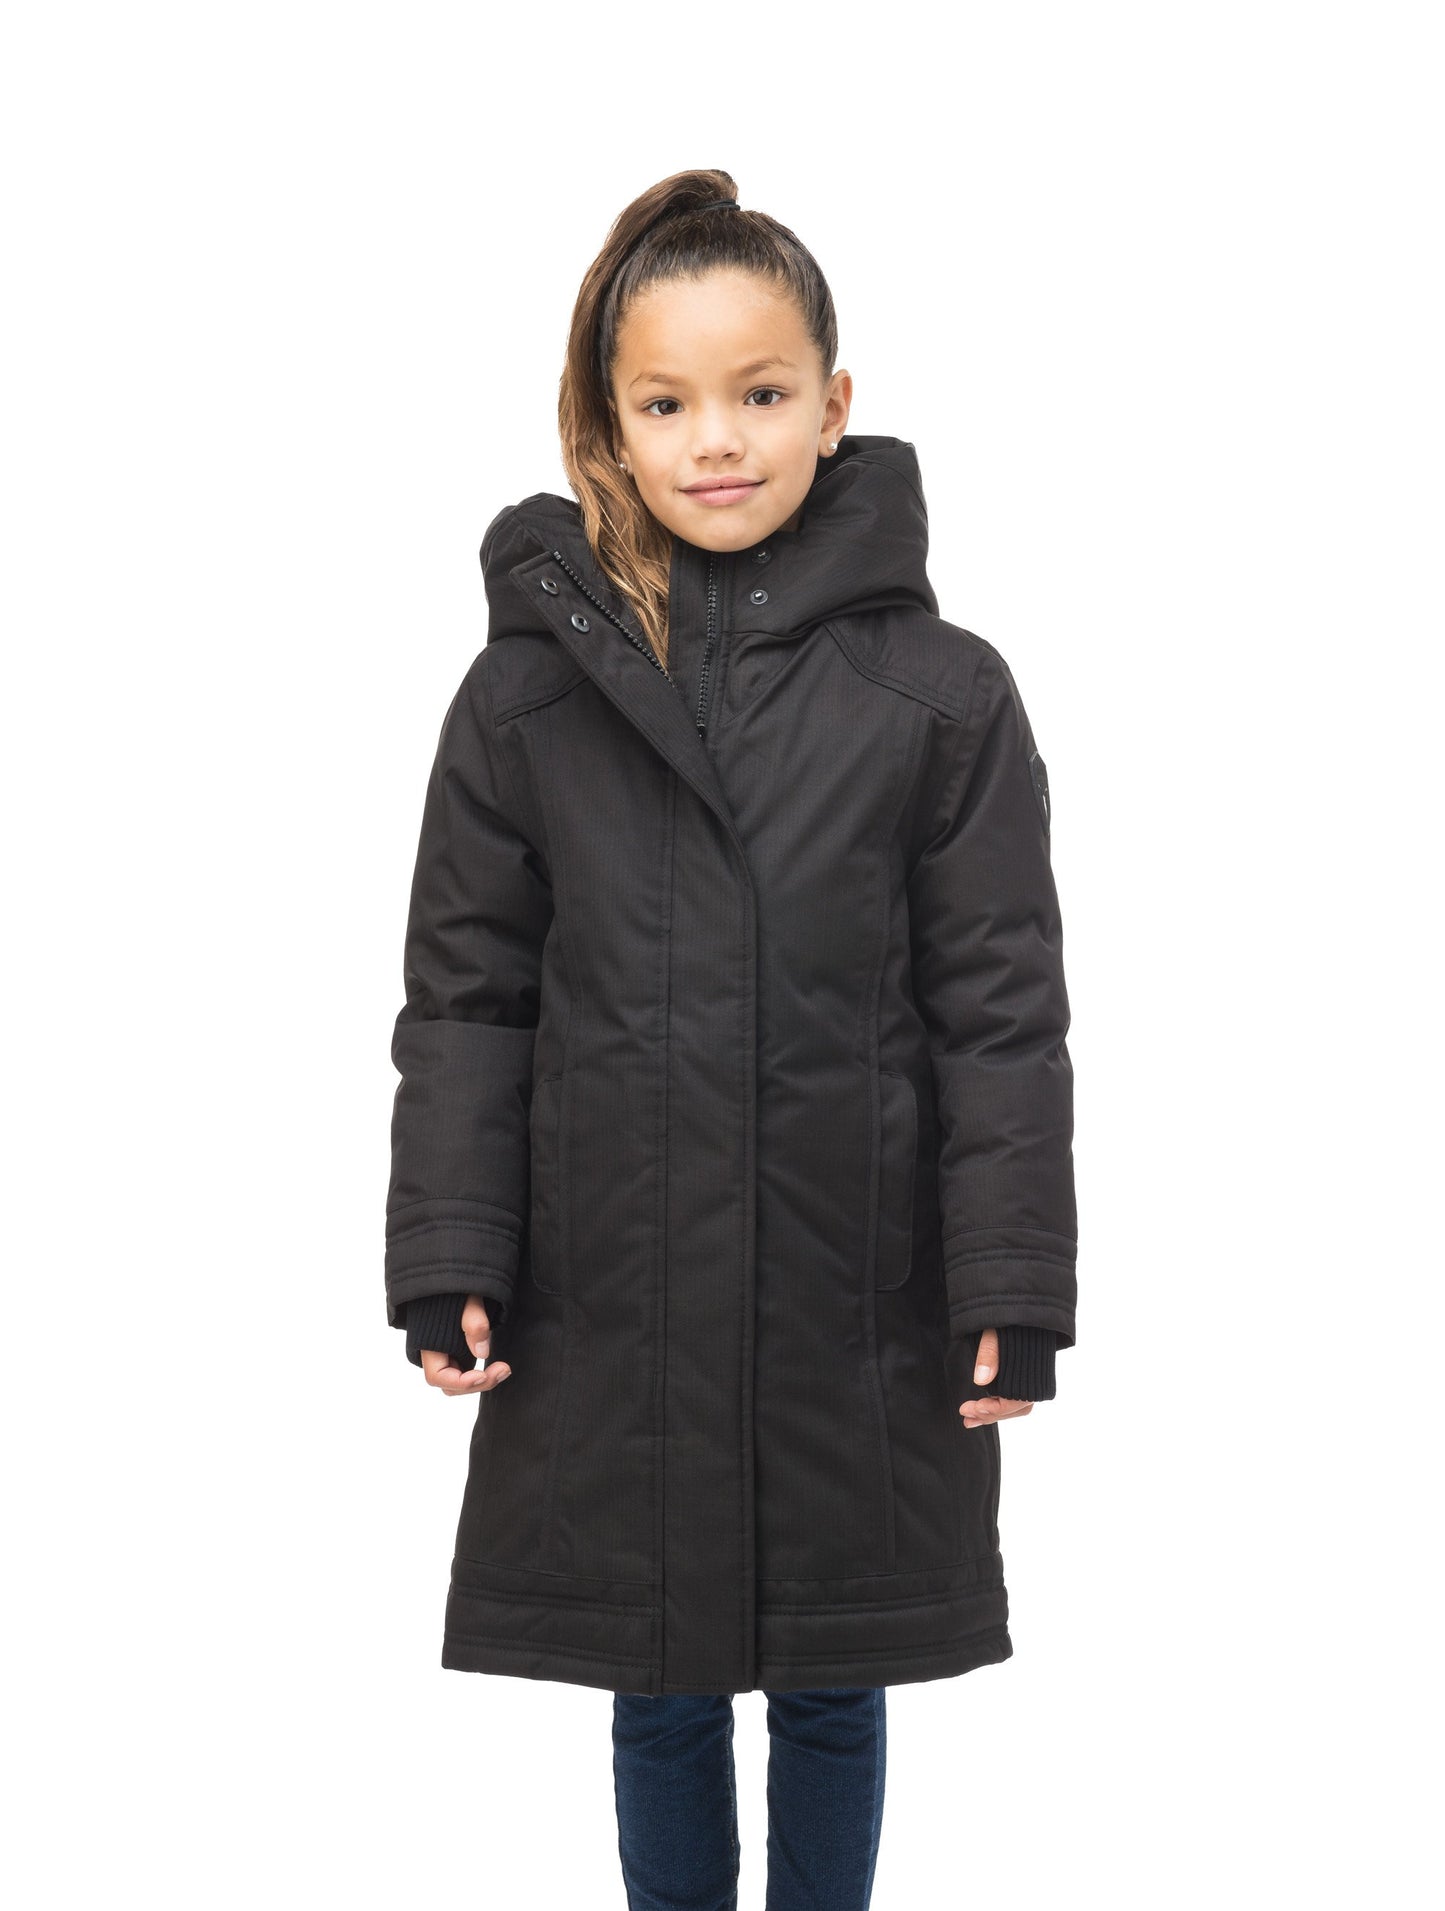 25 Degree winter new fashion children's down jacket Black warm